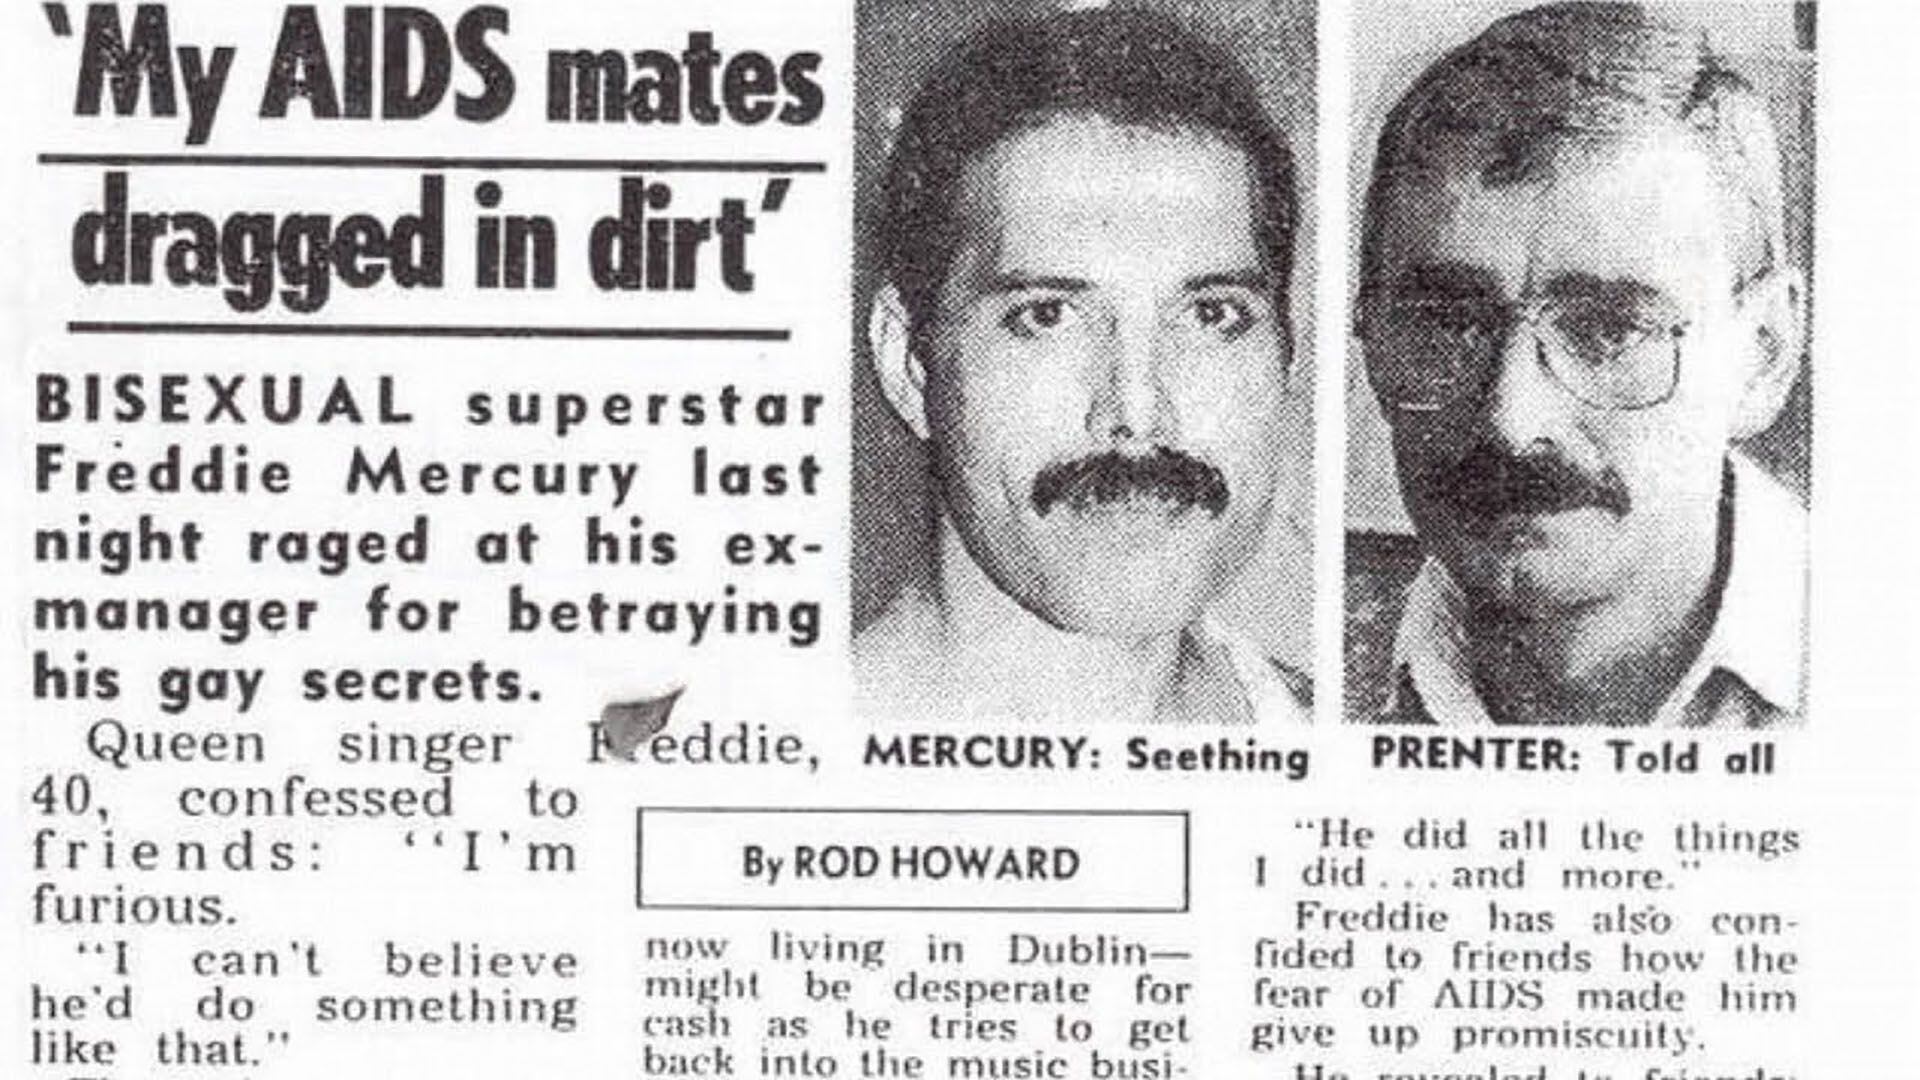 Paul Prenter, una antigua pareja de Freddie y ex manager de la banda, vendió fotos y declaraciones exclusivas a un diario sensacionalista inglés revelando intimidades sexuales del cantante